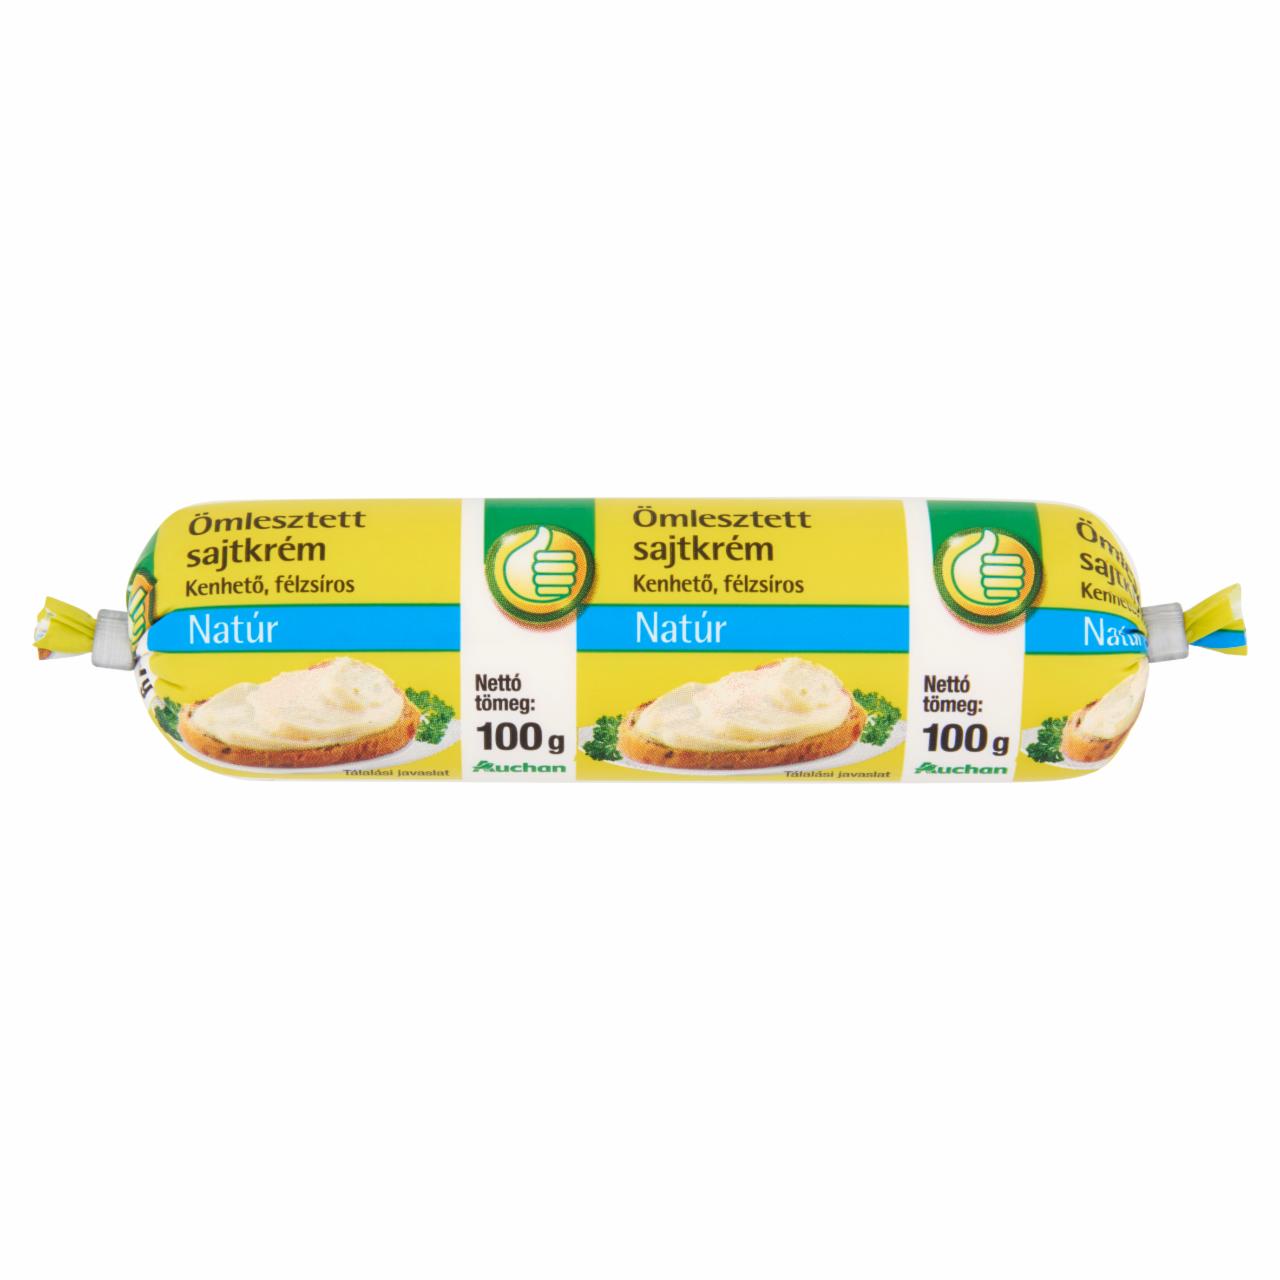 Képek - Auchan kenhető, félzsíros natúr ömlesztett sajtkrém 100 g